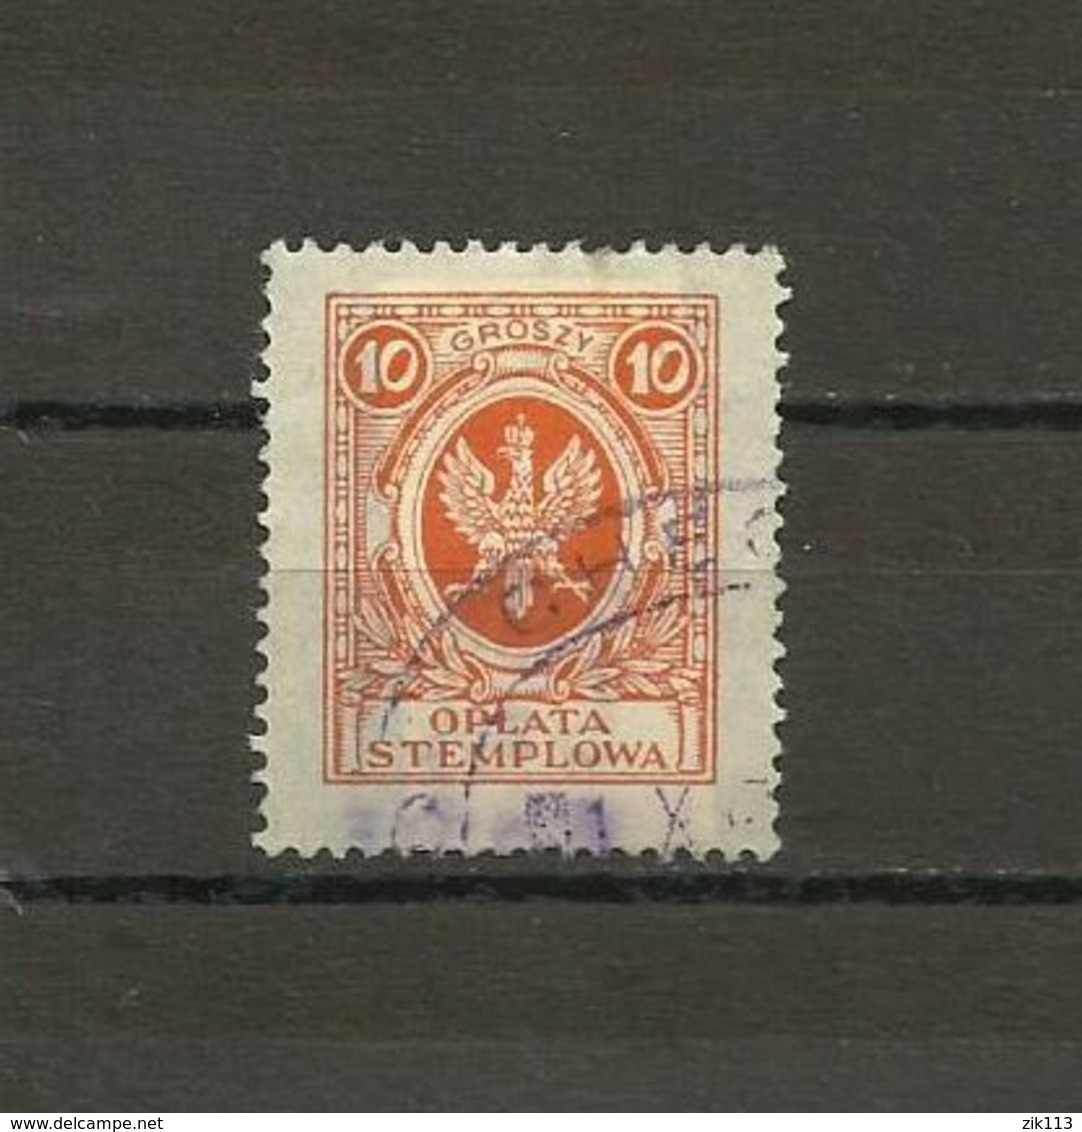 Poland, Polen - Stamp Fee, Stempelgebuhr, 10 Groszy, Revenue - Steuermarken